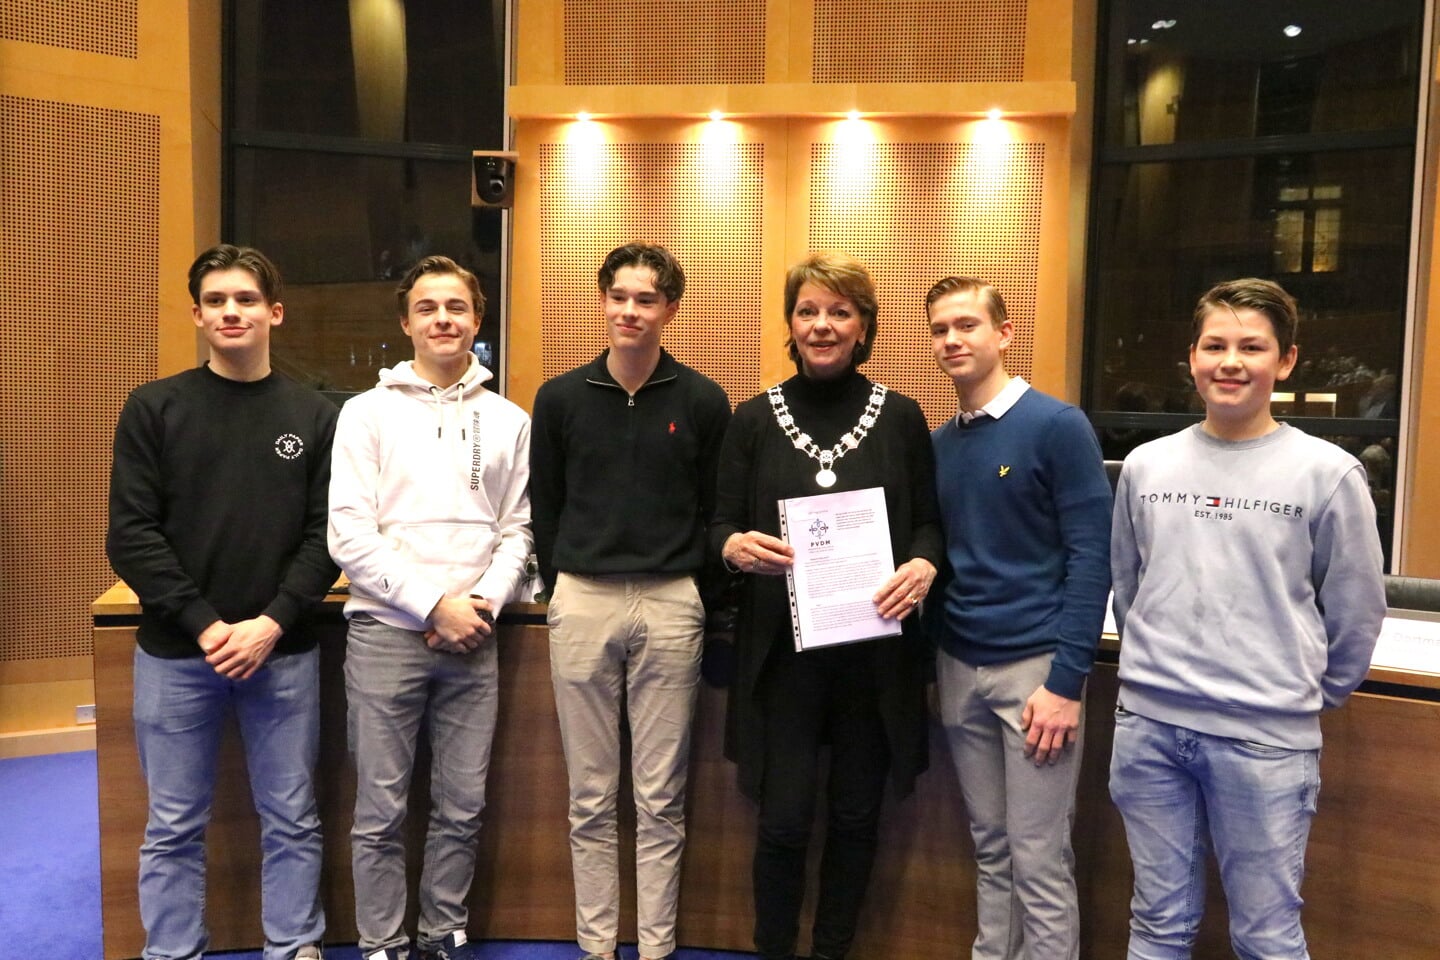 Onlangs hebben vijf leerlingen van het Carolus Borromeus College aan burgemeester Elly Blanksma een burgerinitiatief overhandigd